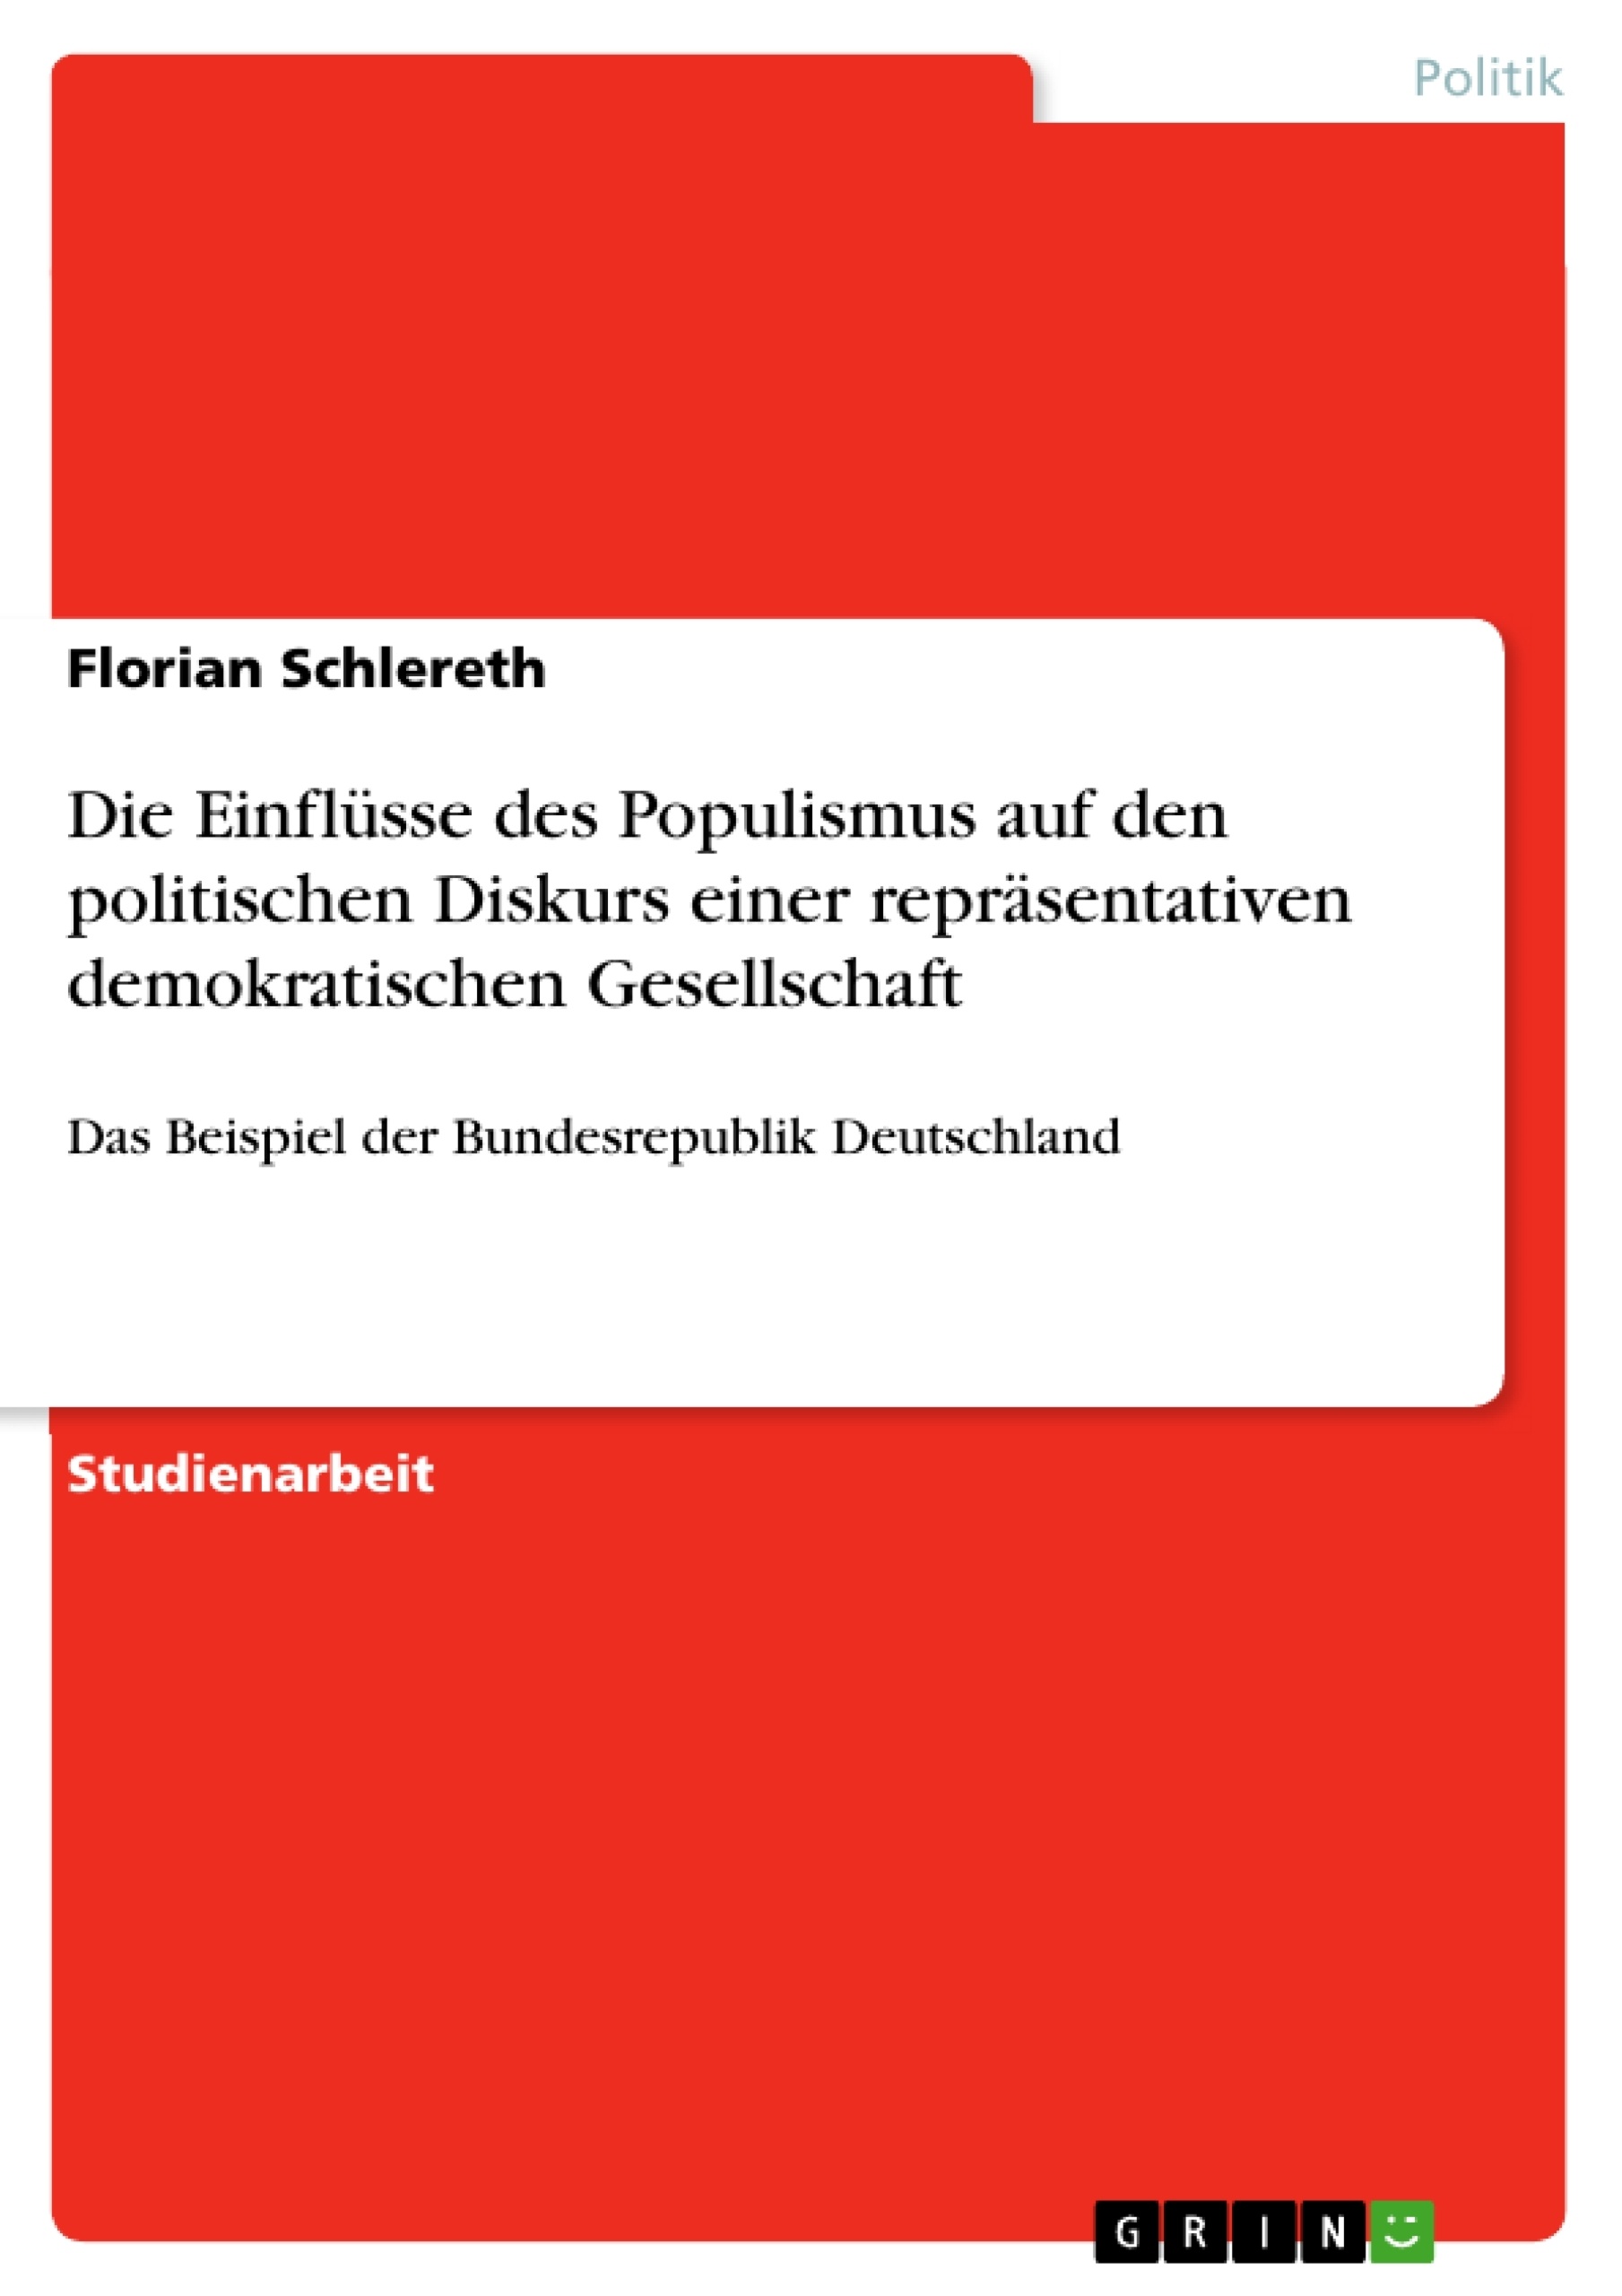 Título: Die Einflüsse des Populismus auf den politischen Diskurs einer repräsentativen demokratischen Gesellschaft